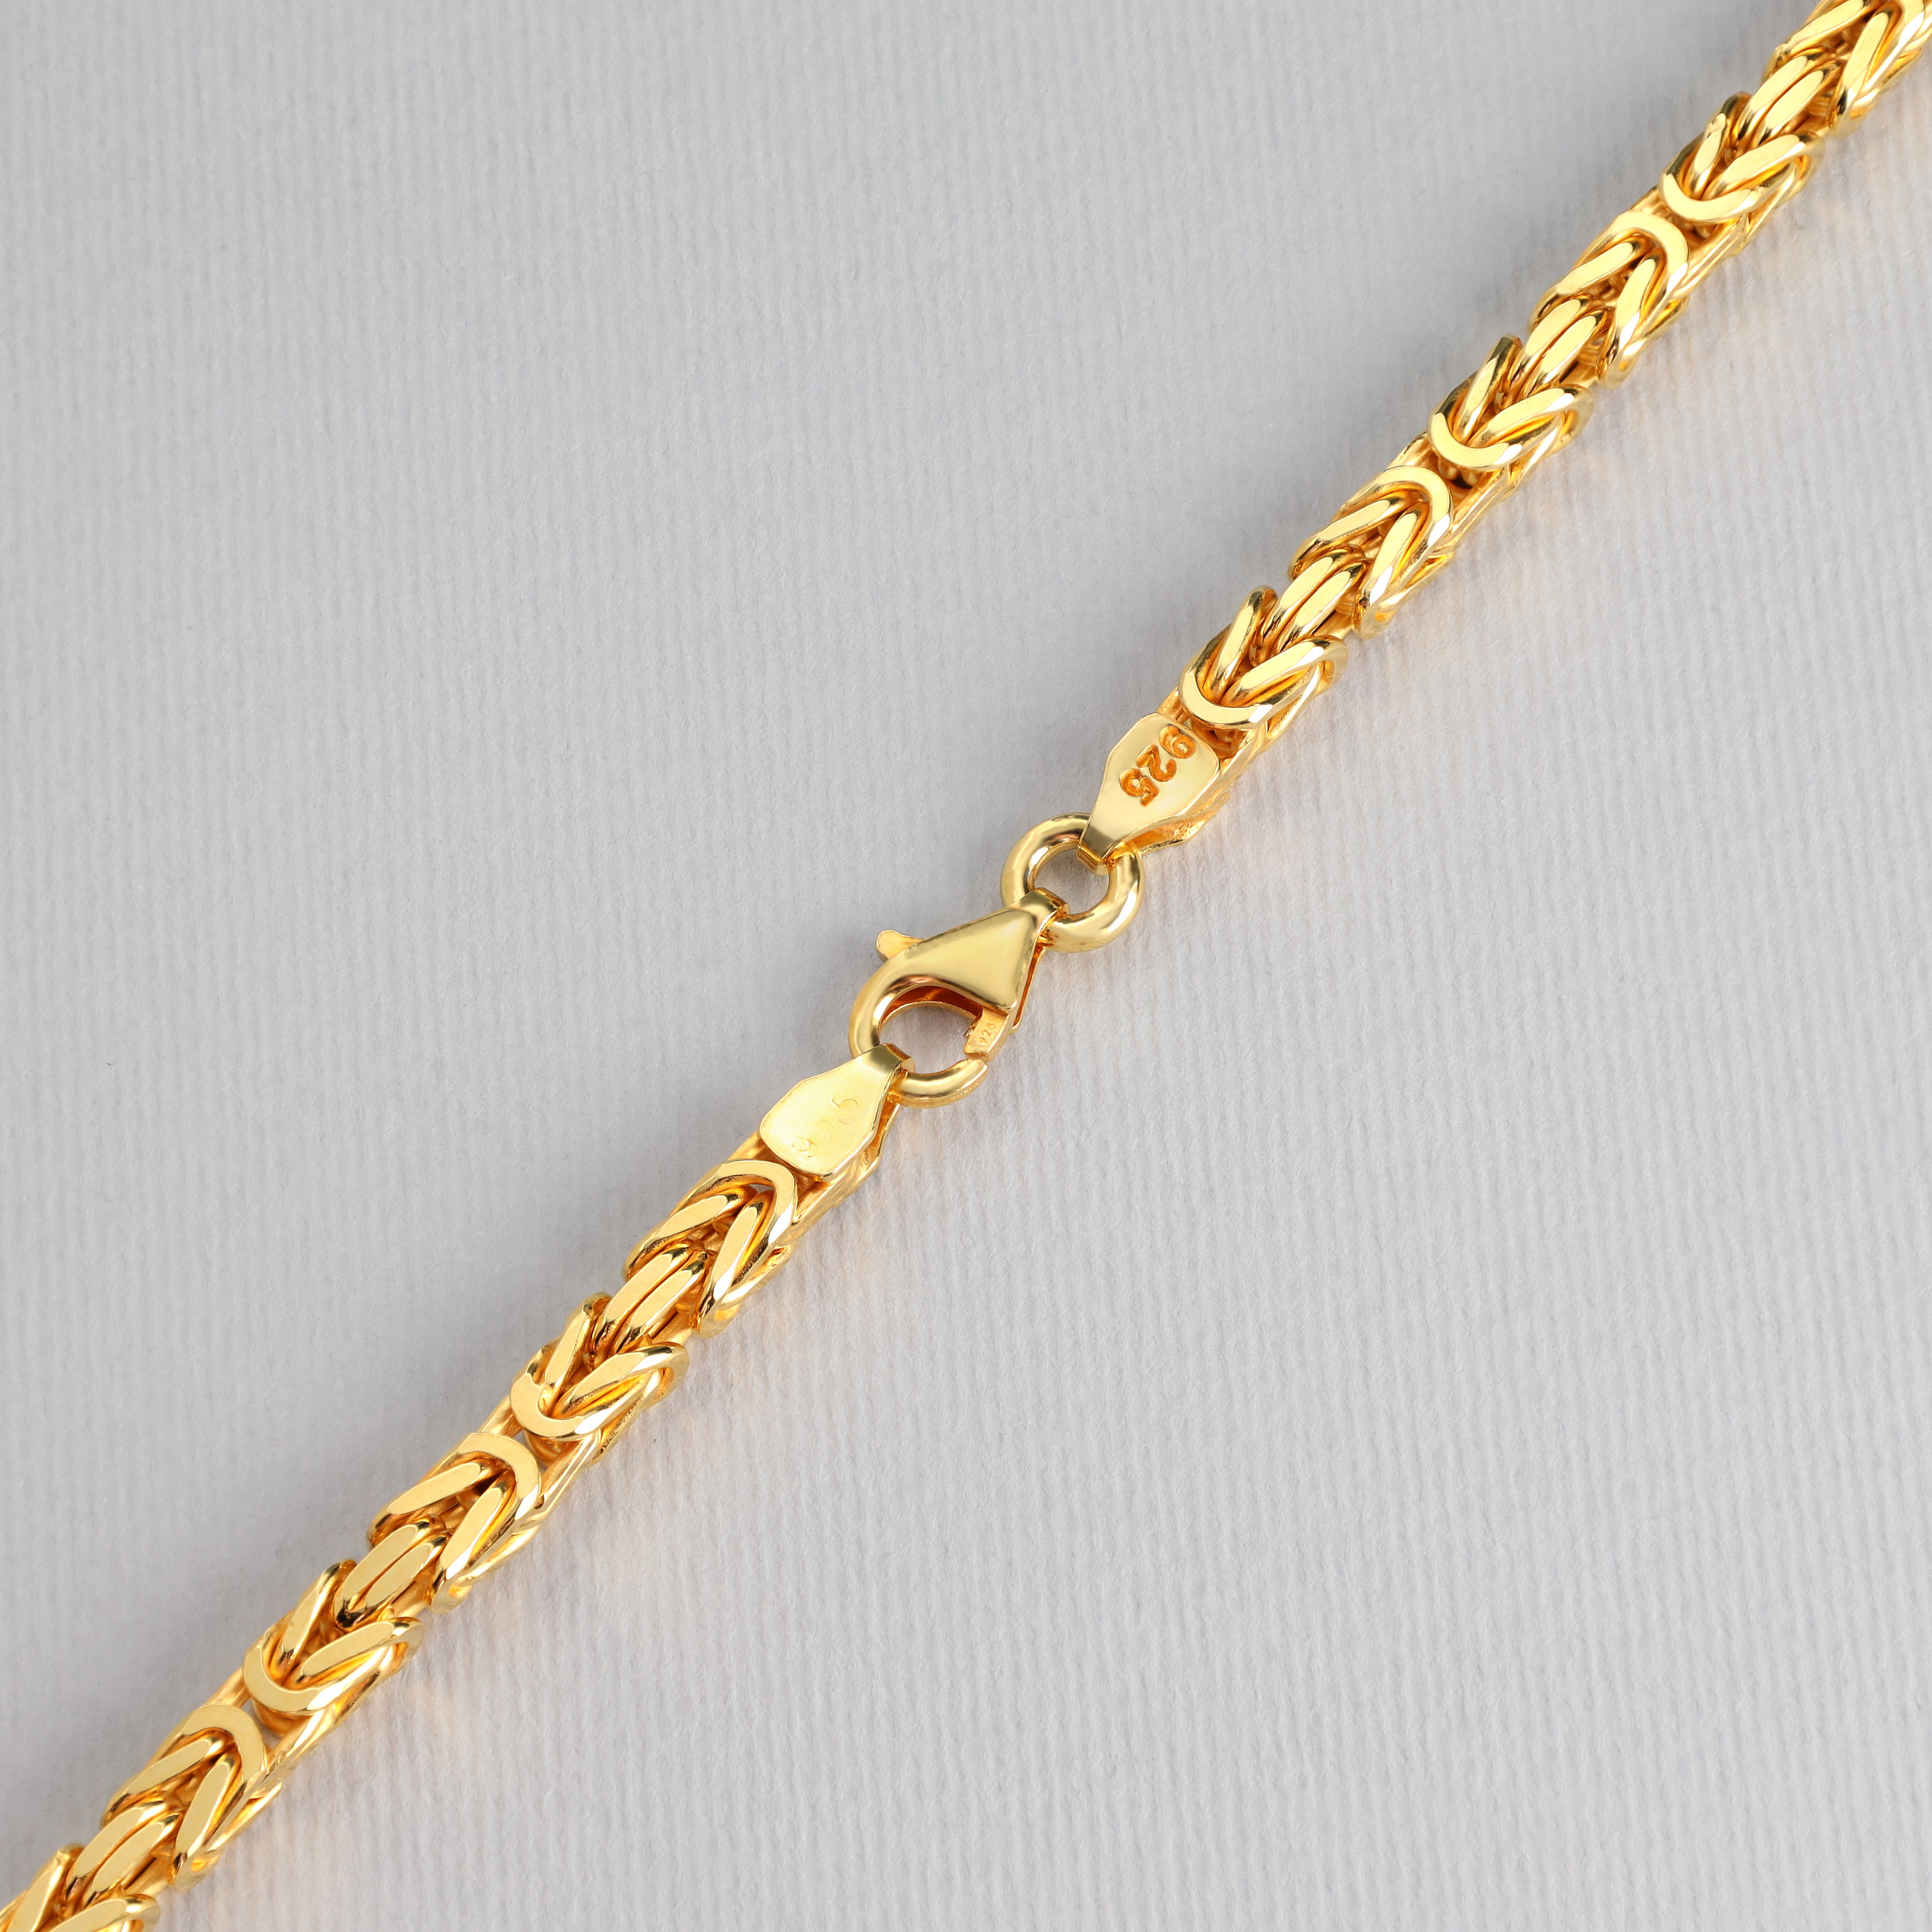 Königskette vierkant vergoldet 4mm breit 50cm lang 925 Sterling Silber (K946G) - Taipan Schmuck